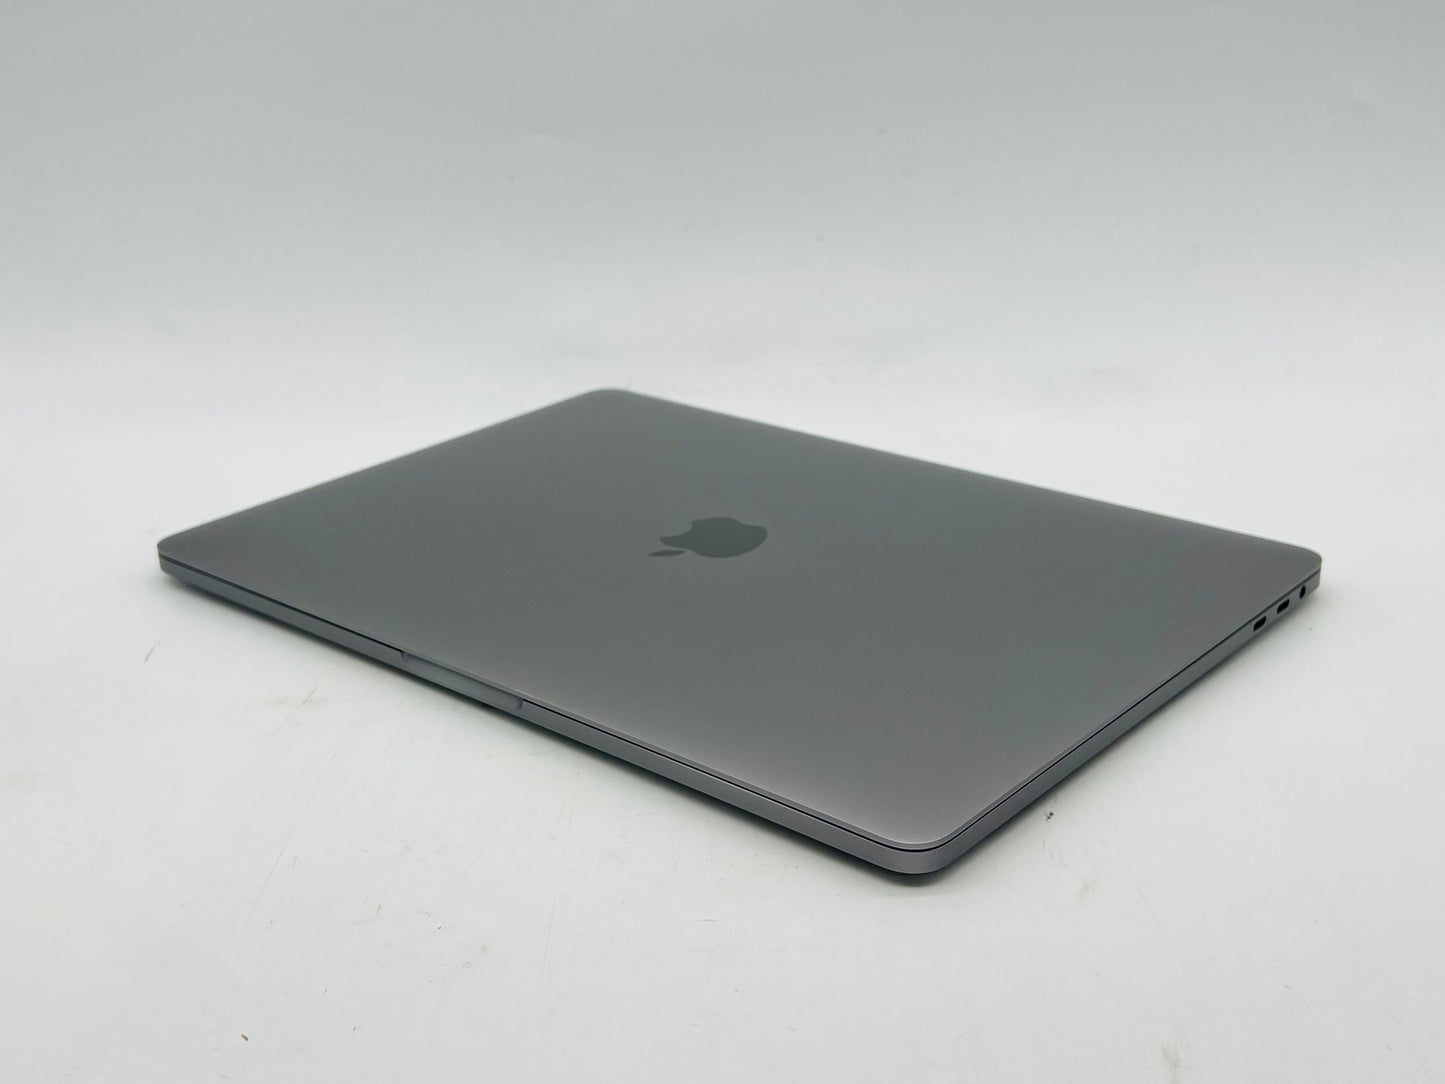 Apple 2019 MacBook Pro 13 in TB 2.8GHz Quad-Core i7 16GB RAM 512GB SSD